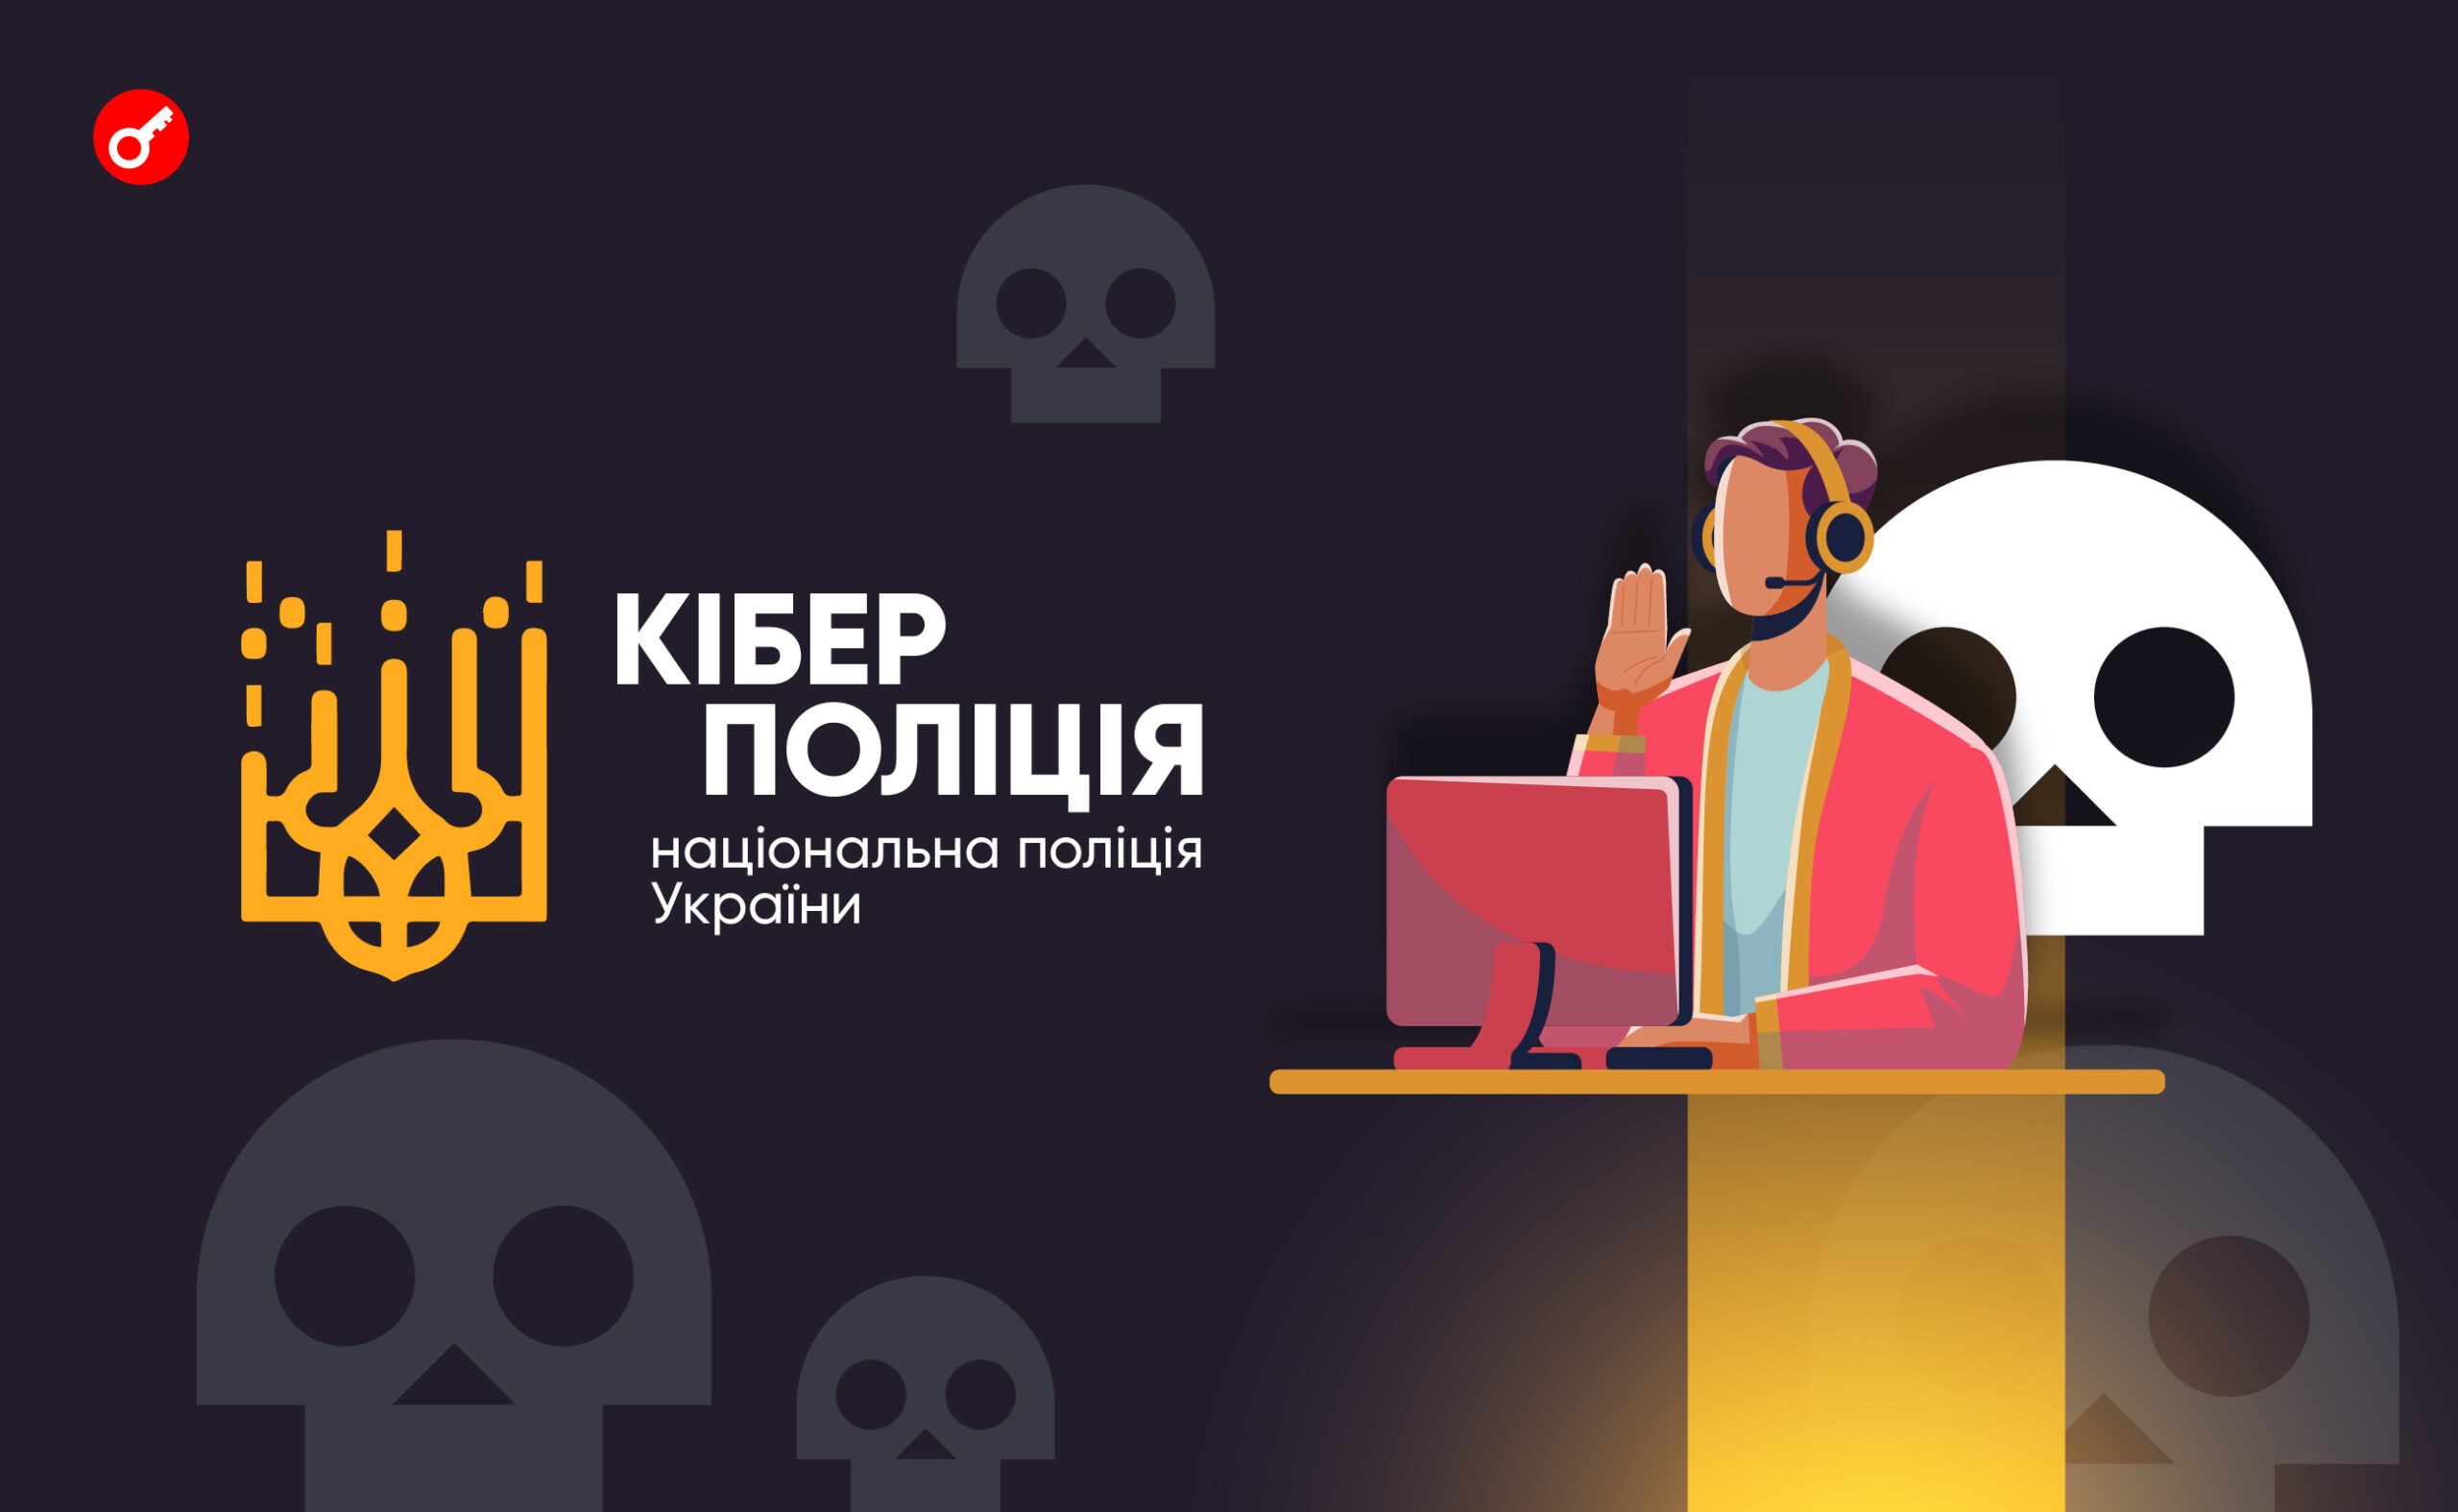 Киберполиция: мошеннические колл-центры предлагали украинцам инвестировать в криптовалюту. Заглавный коллаж новости.